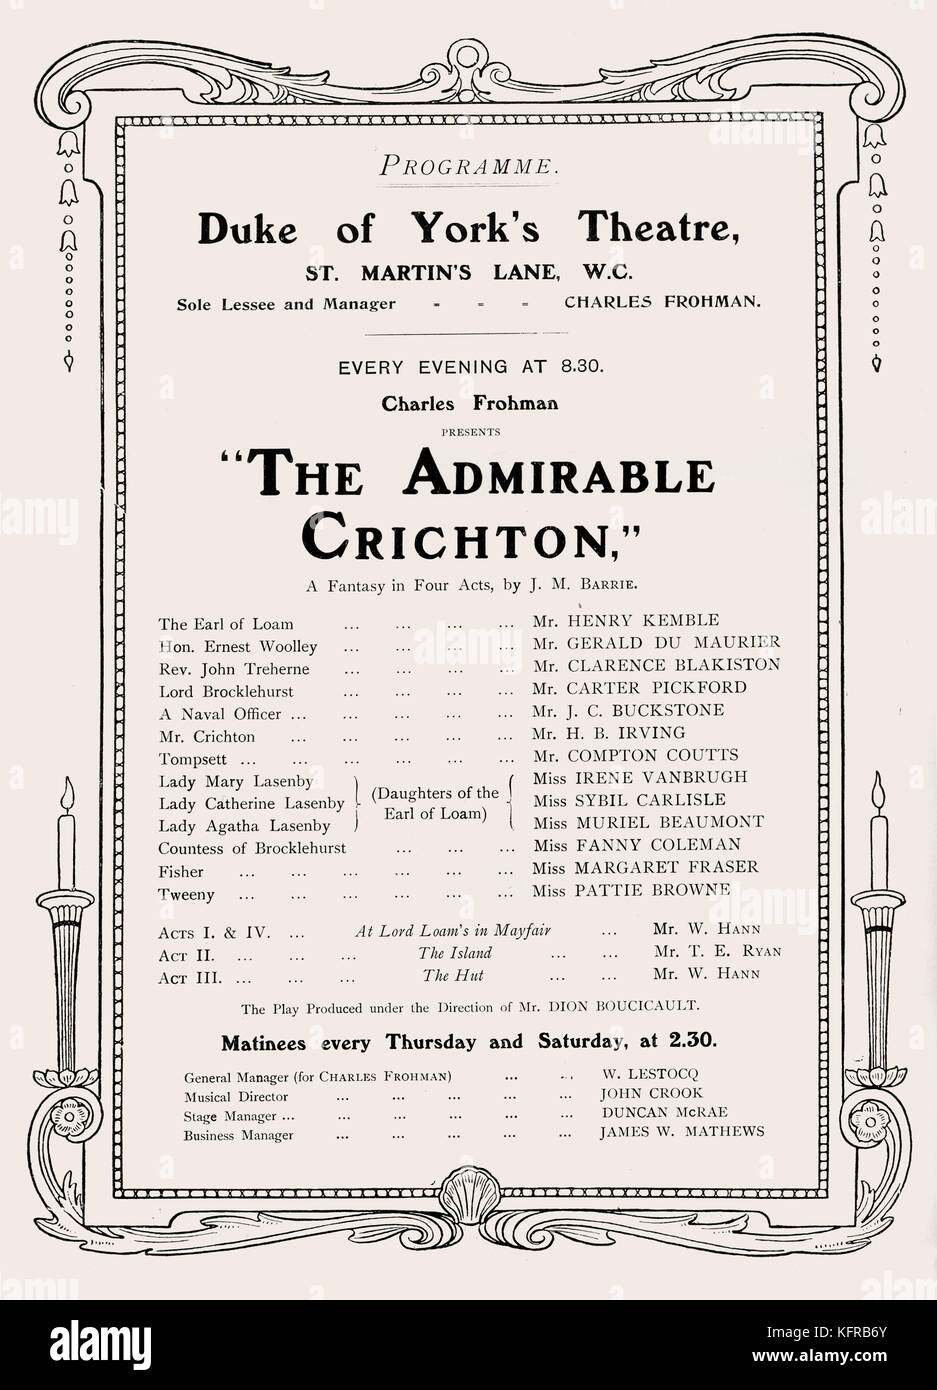 Der Admiral Crichton von J.M. Barrie, C. 1902. Programm für die Produktion an den Herzog von York Theatre, London, die am 4. November 1902 eröffnet. J.M. Barrie: Schottische Dramatiker und Autor, b. 9. Mai 1860 - d. 19. Juni 1937 Stockfoto